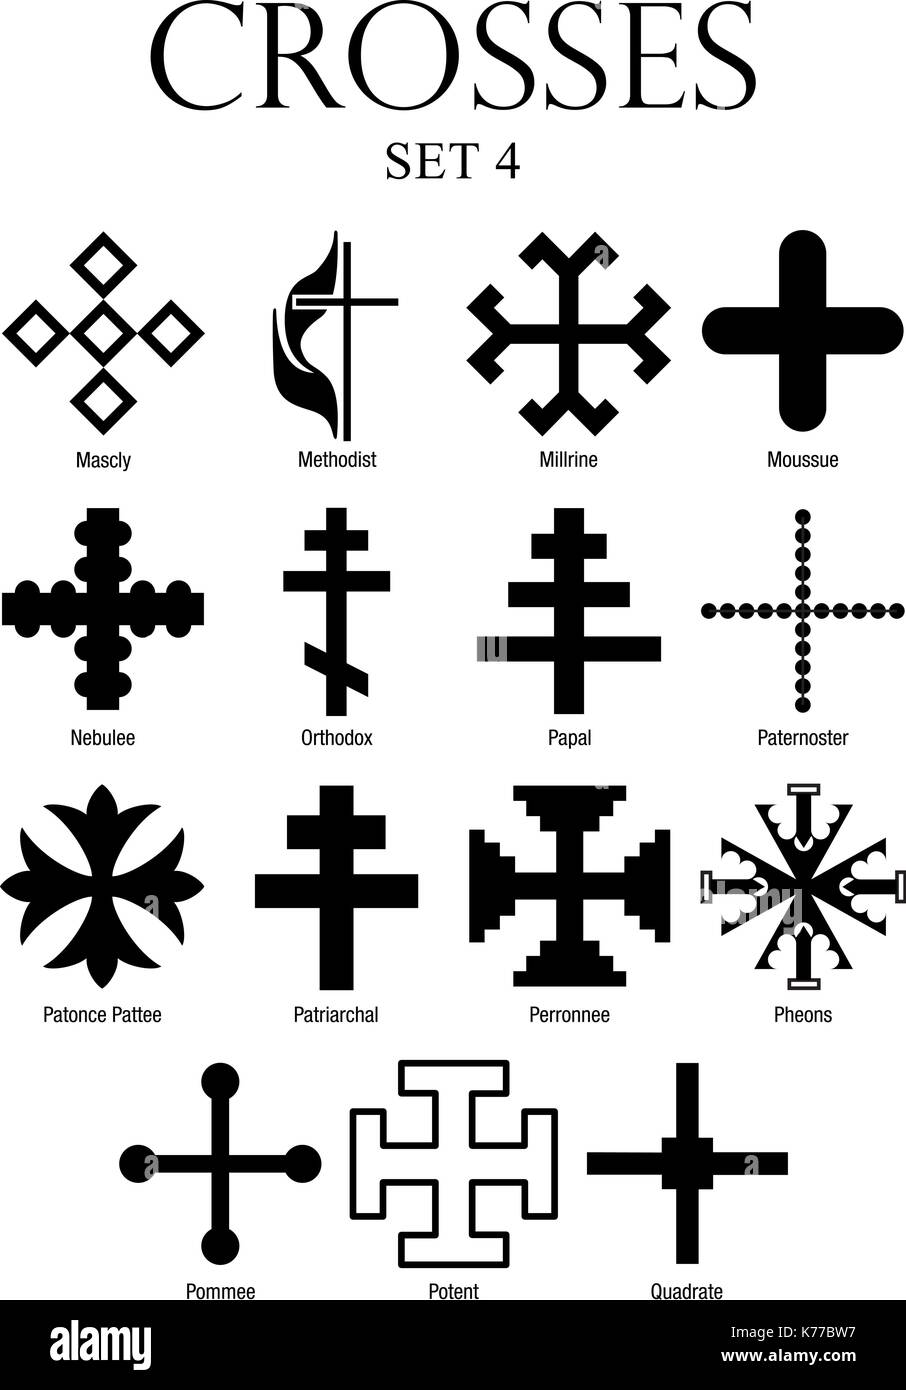 Série de croisements avec des noms sur fond blanc. Format A4 - image vectorielle Illustration de Vecteur